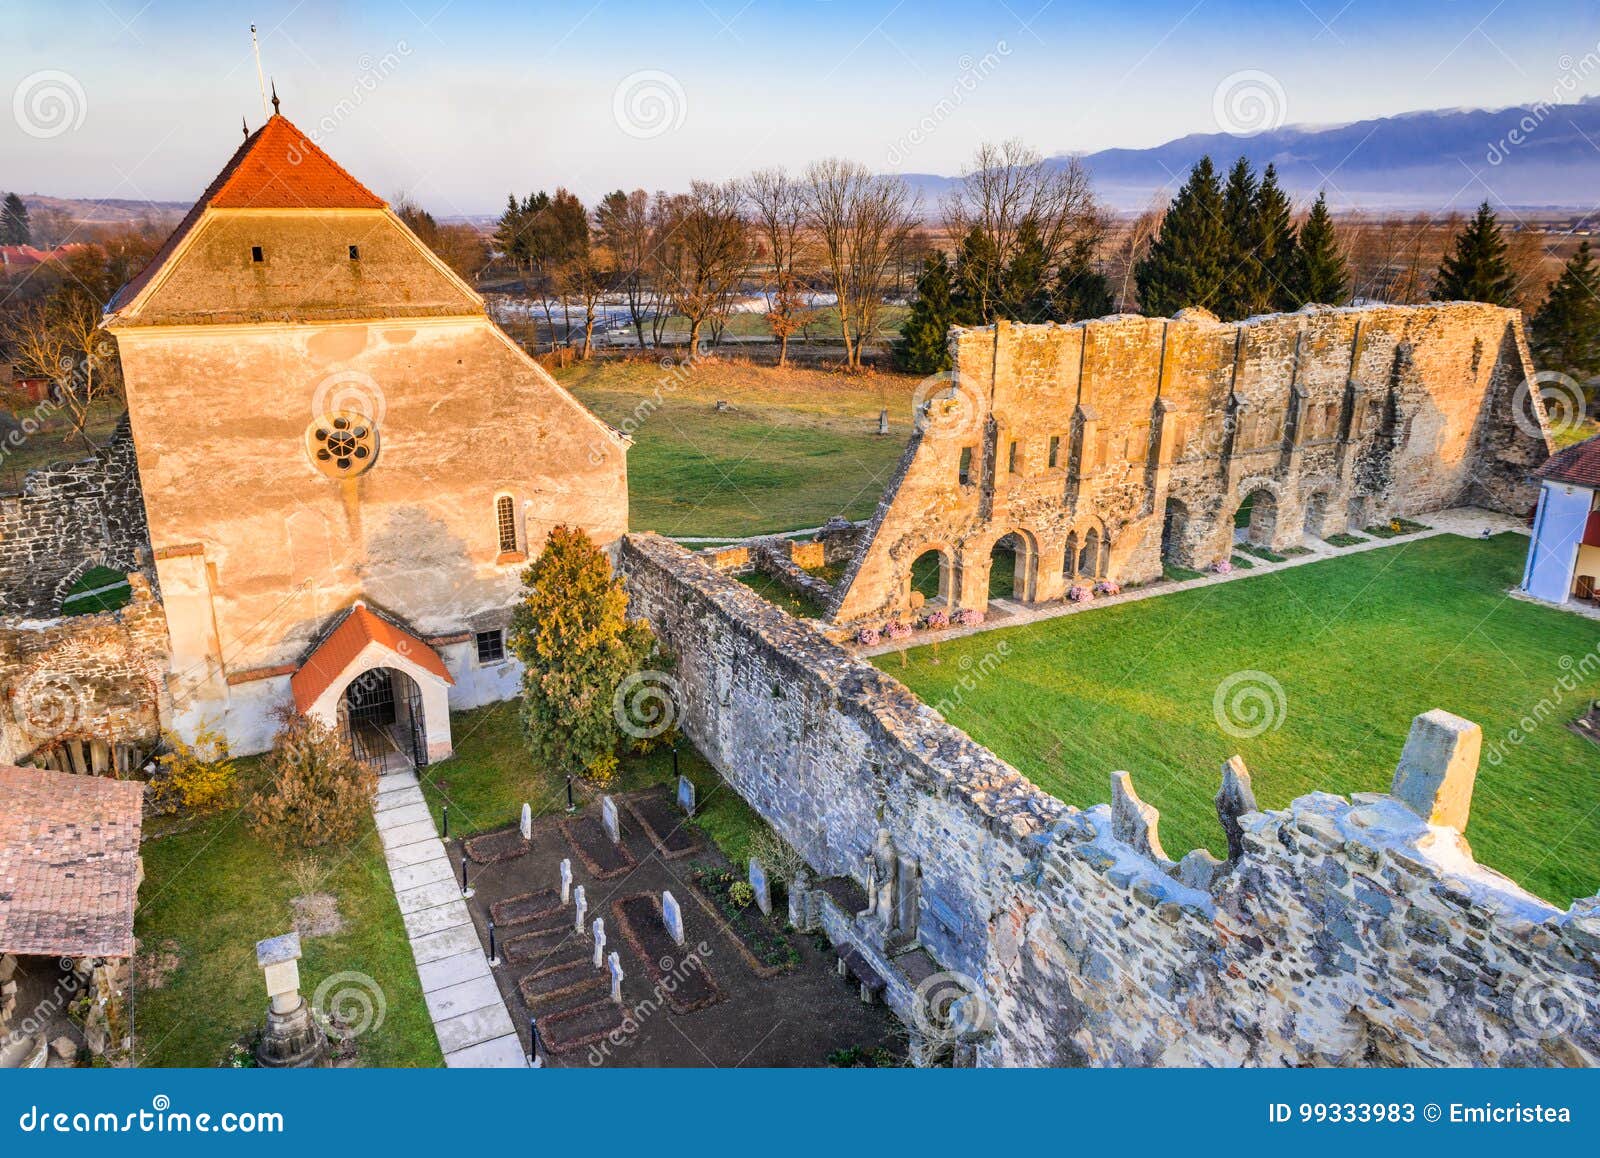 carta monastery, transylvania, romania